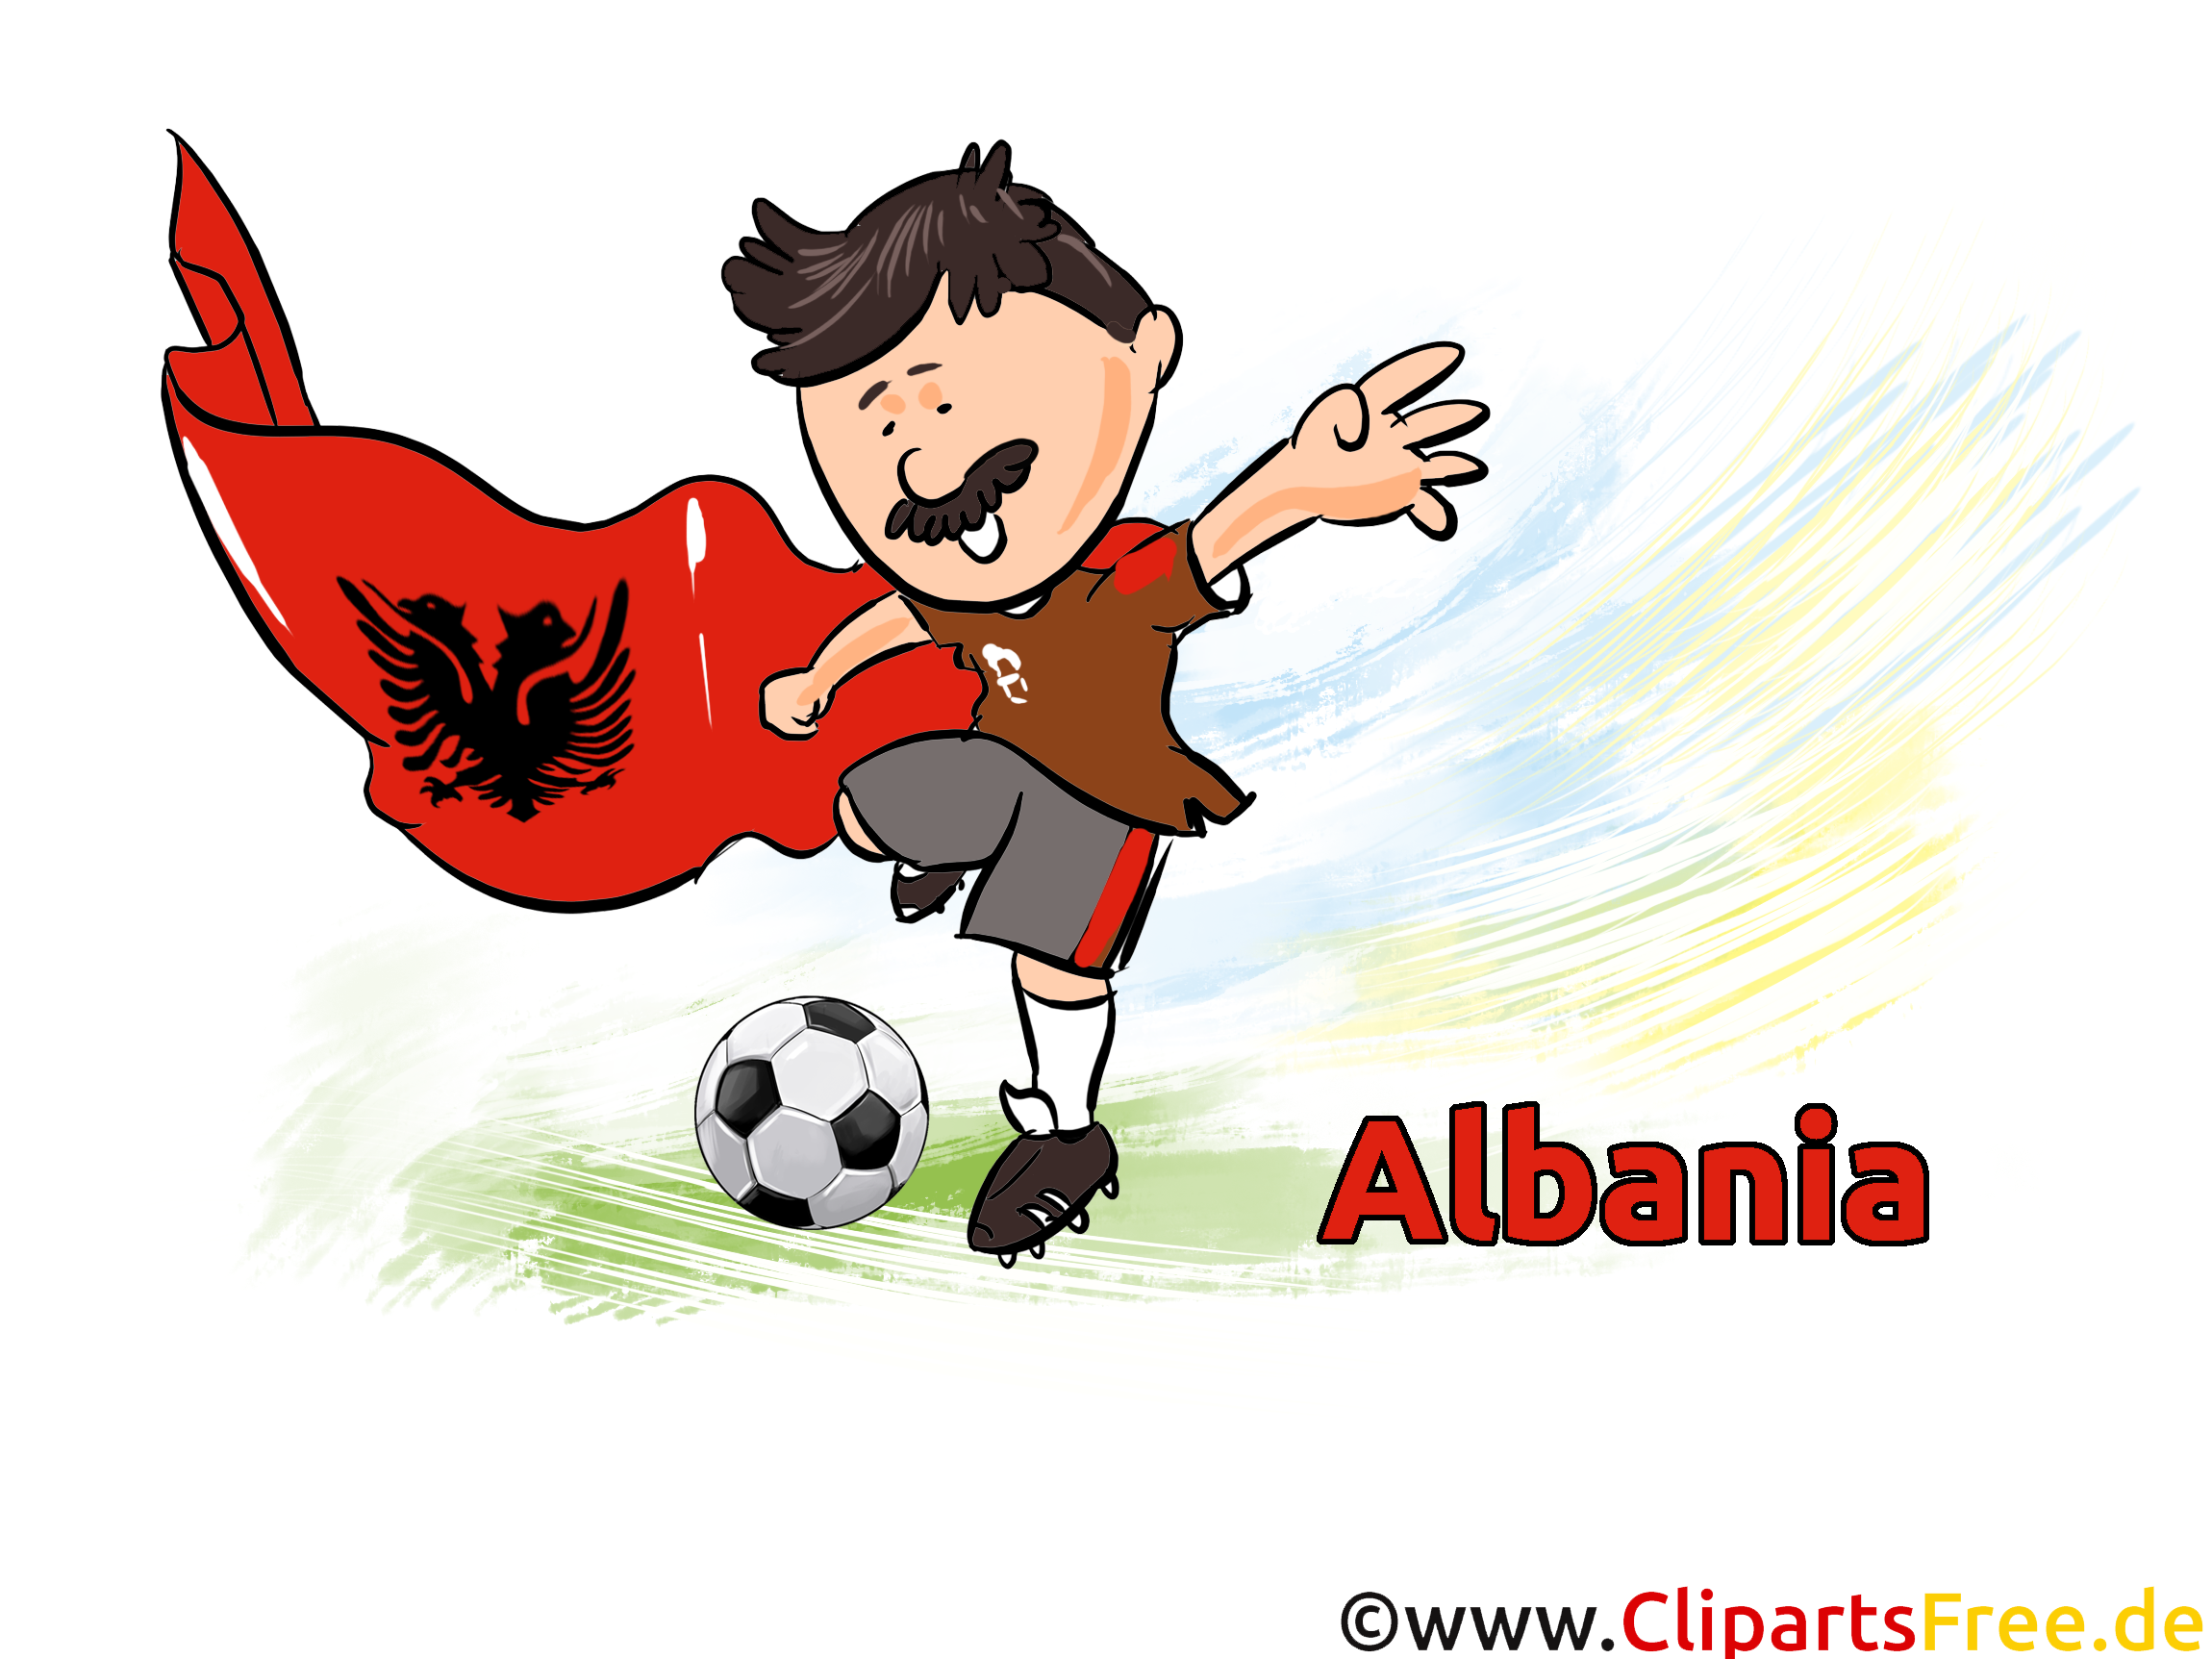 Télécharger Albanie Soccer Images gratuitement